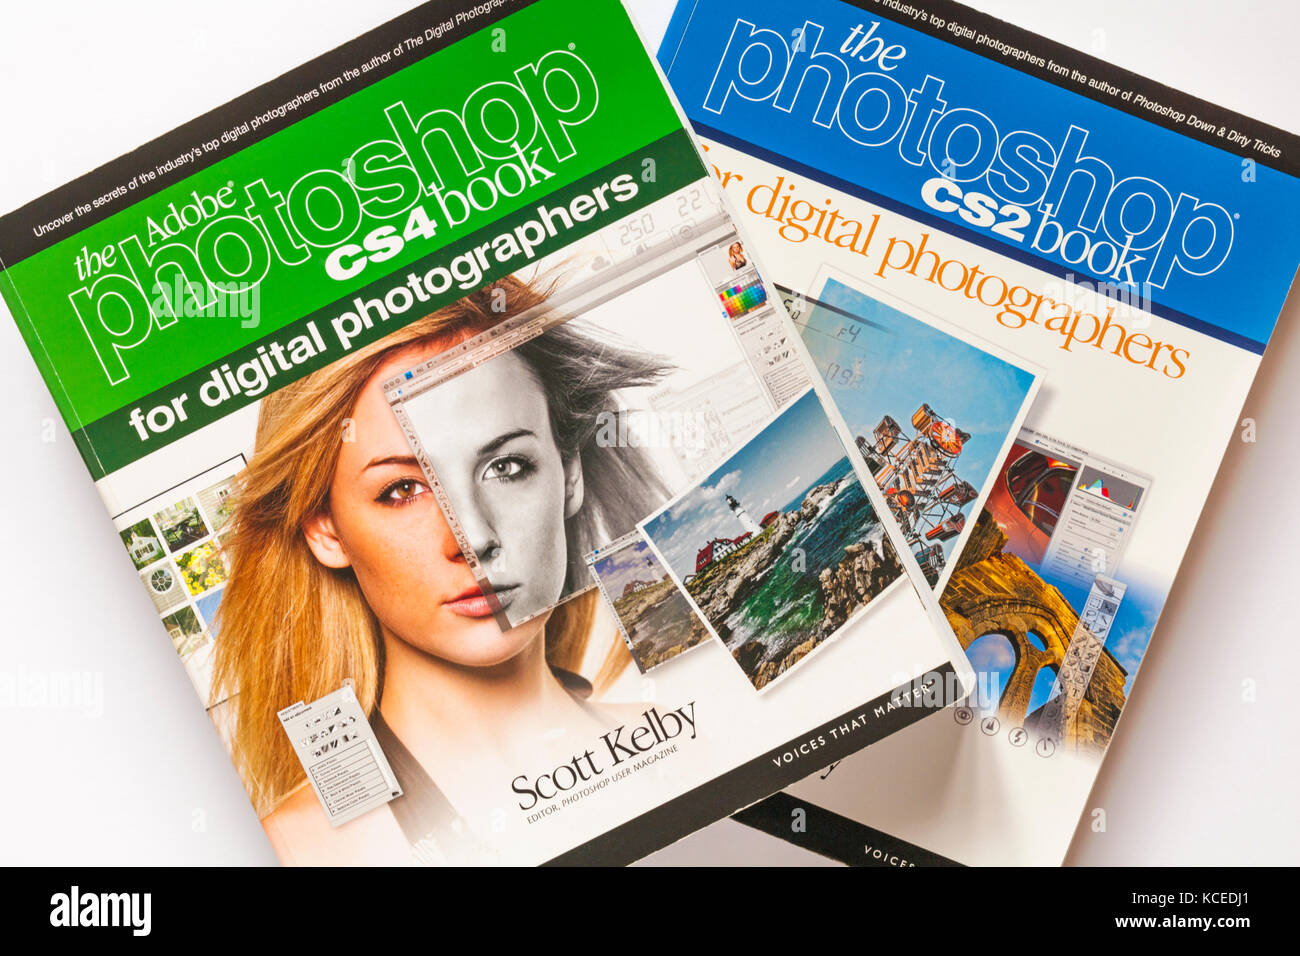 Libri di fotografia - Adobe Photoshop CS4 libro per gli appassionati di fotografia digitale e Photoshop CS2 libro di Scott Kelby Foto Stock